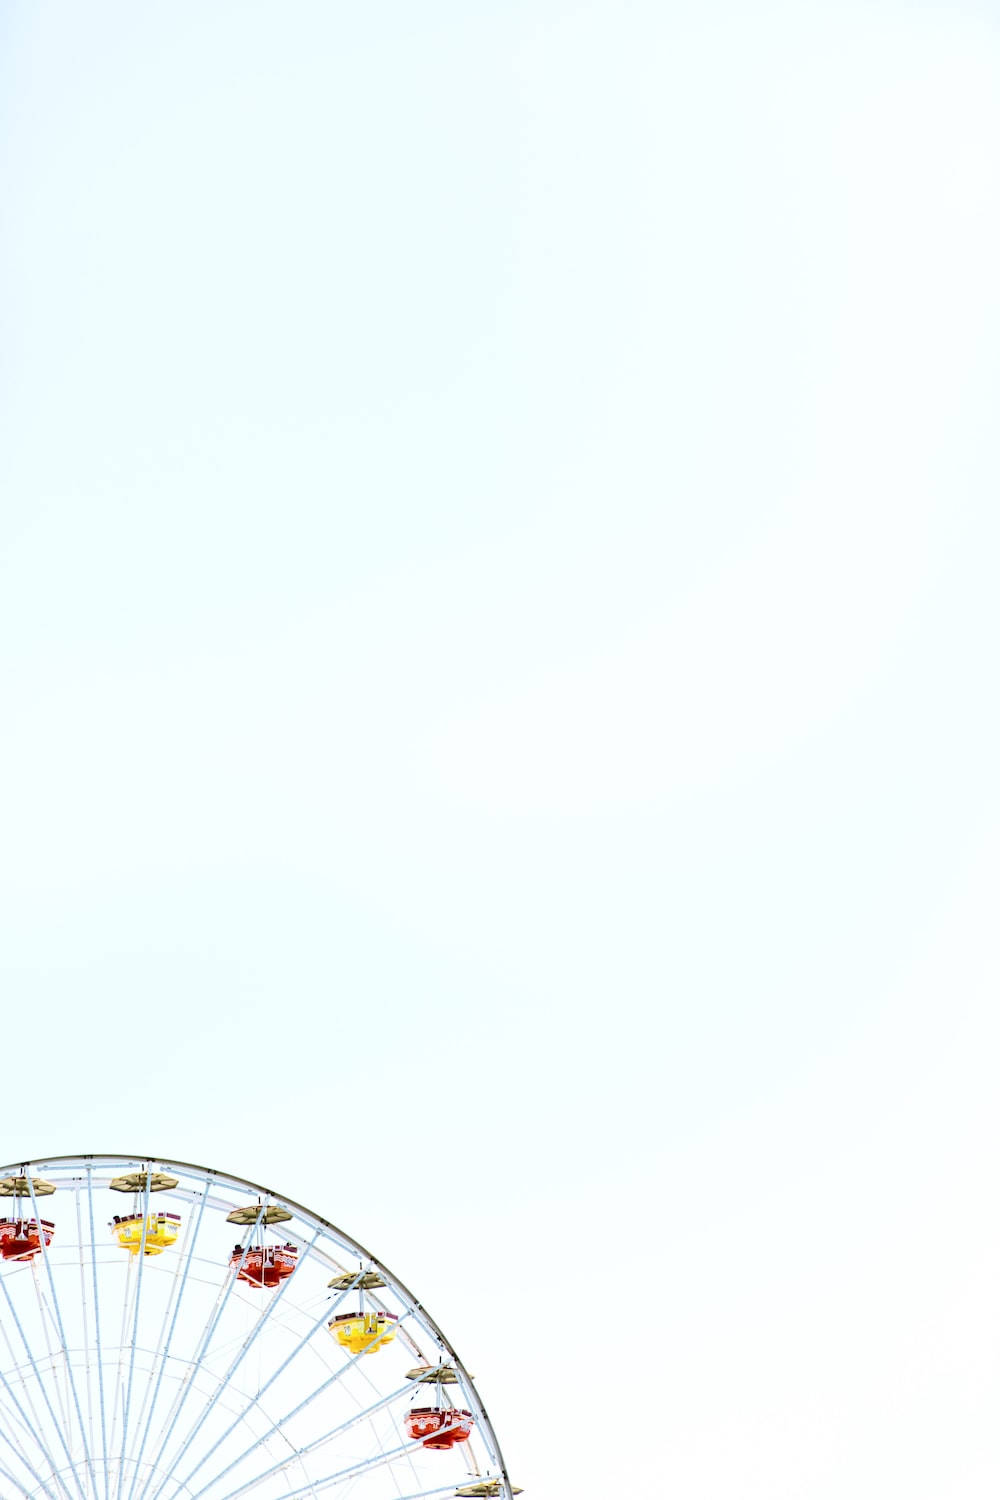 Aesthetic Ferris Wheel On Plain White Background